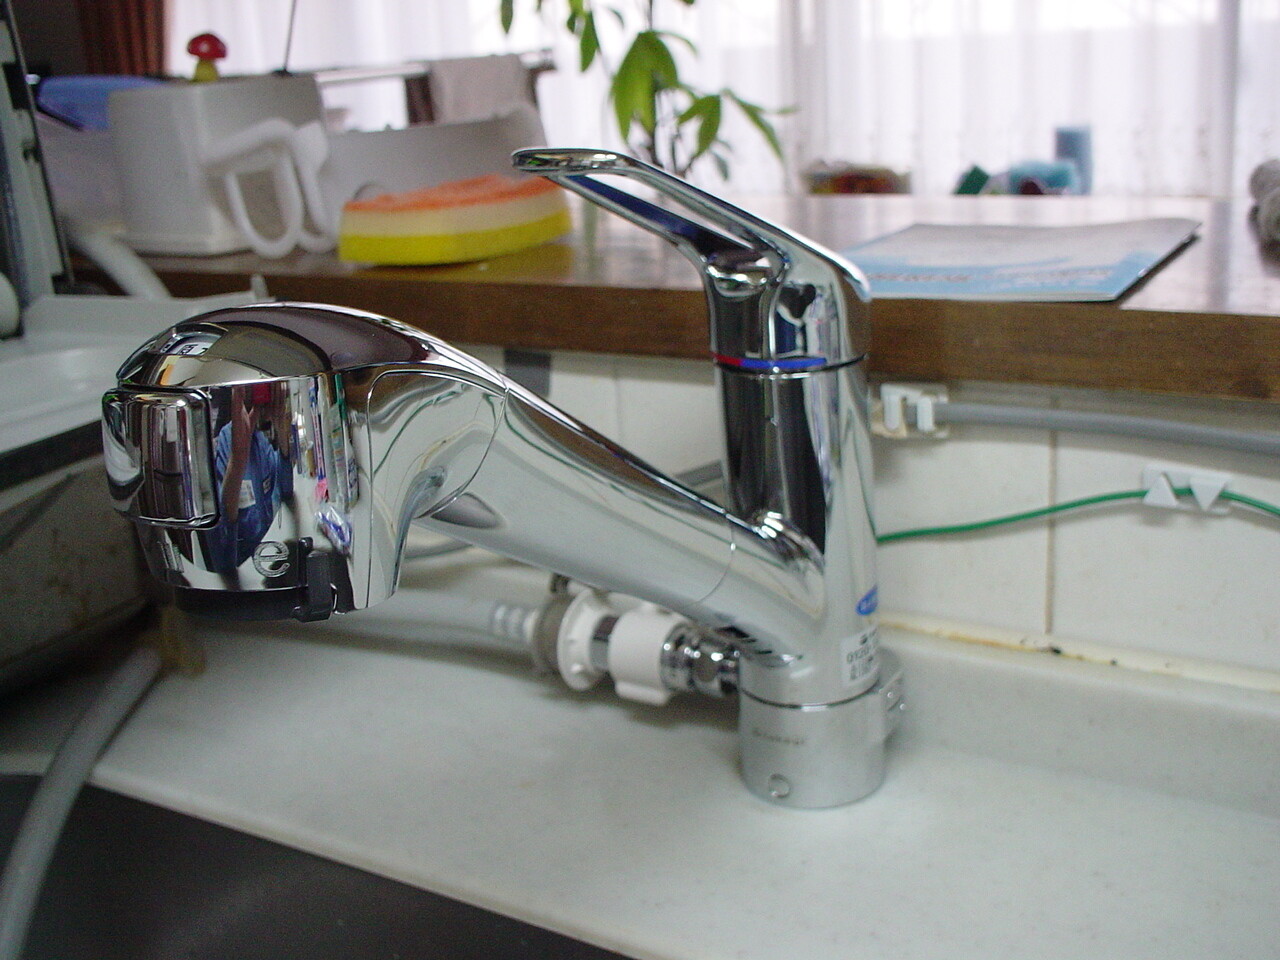 食洗機分岐型のシングルレバー水栓から浄水器内蔵の食洗器分岐型シングルレバー水栓へのリモデル